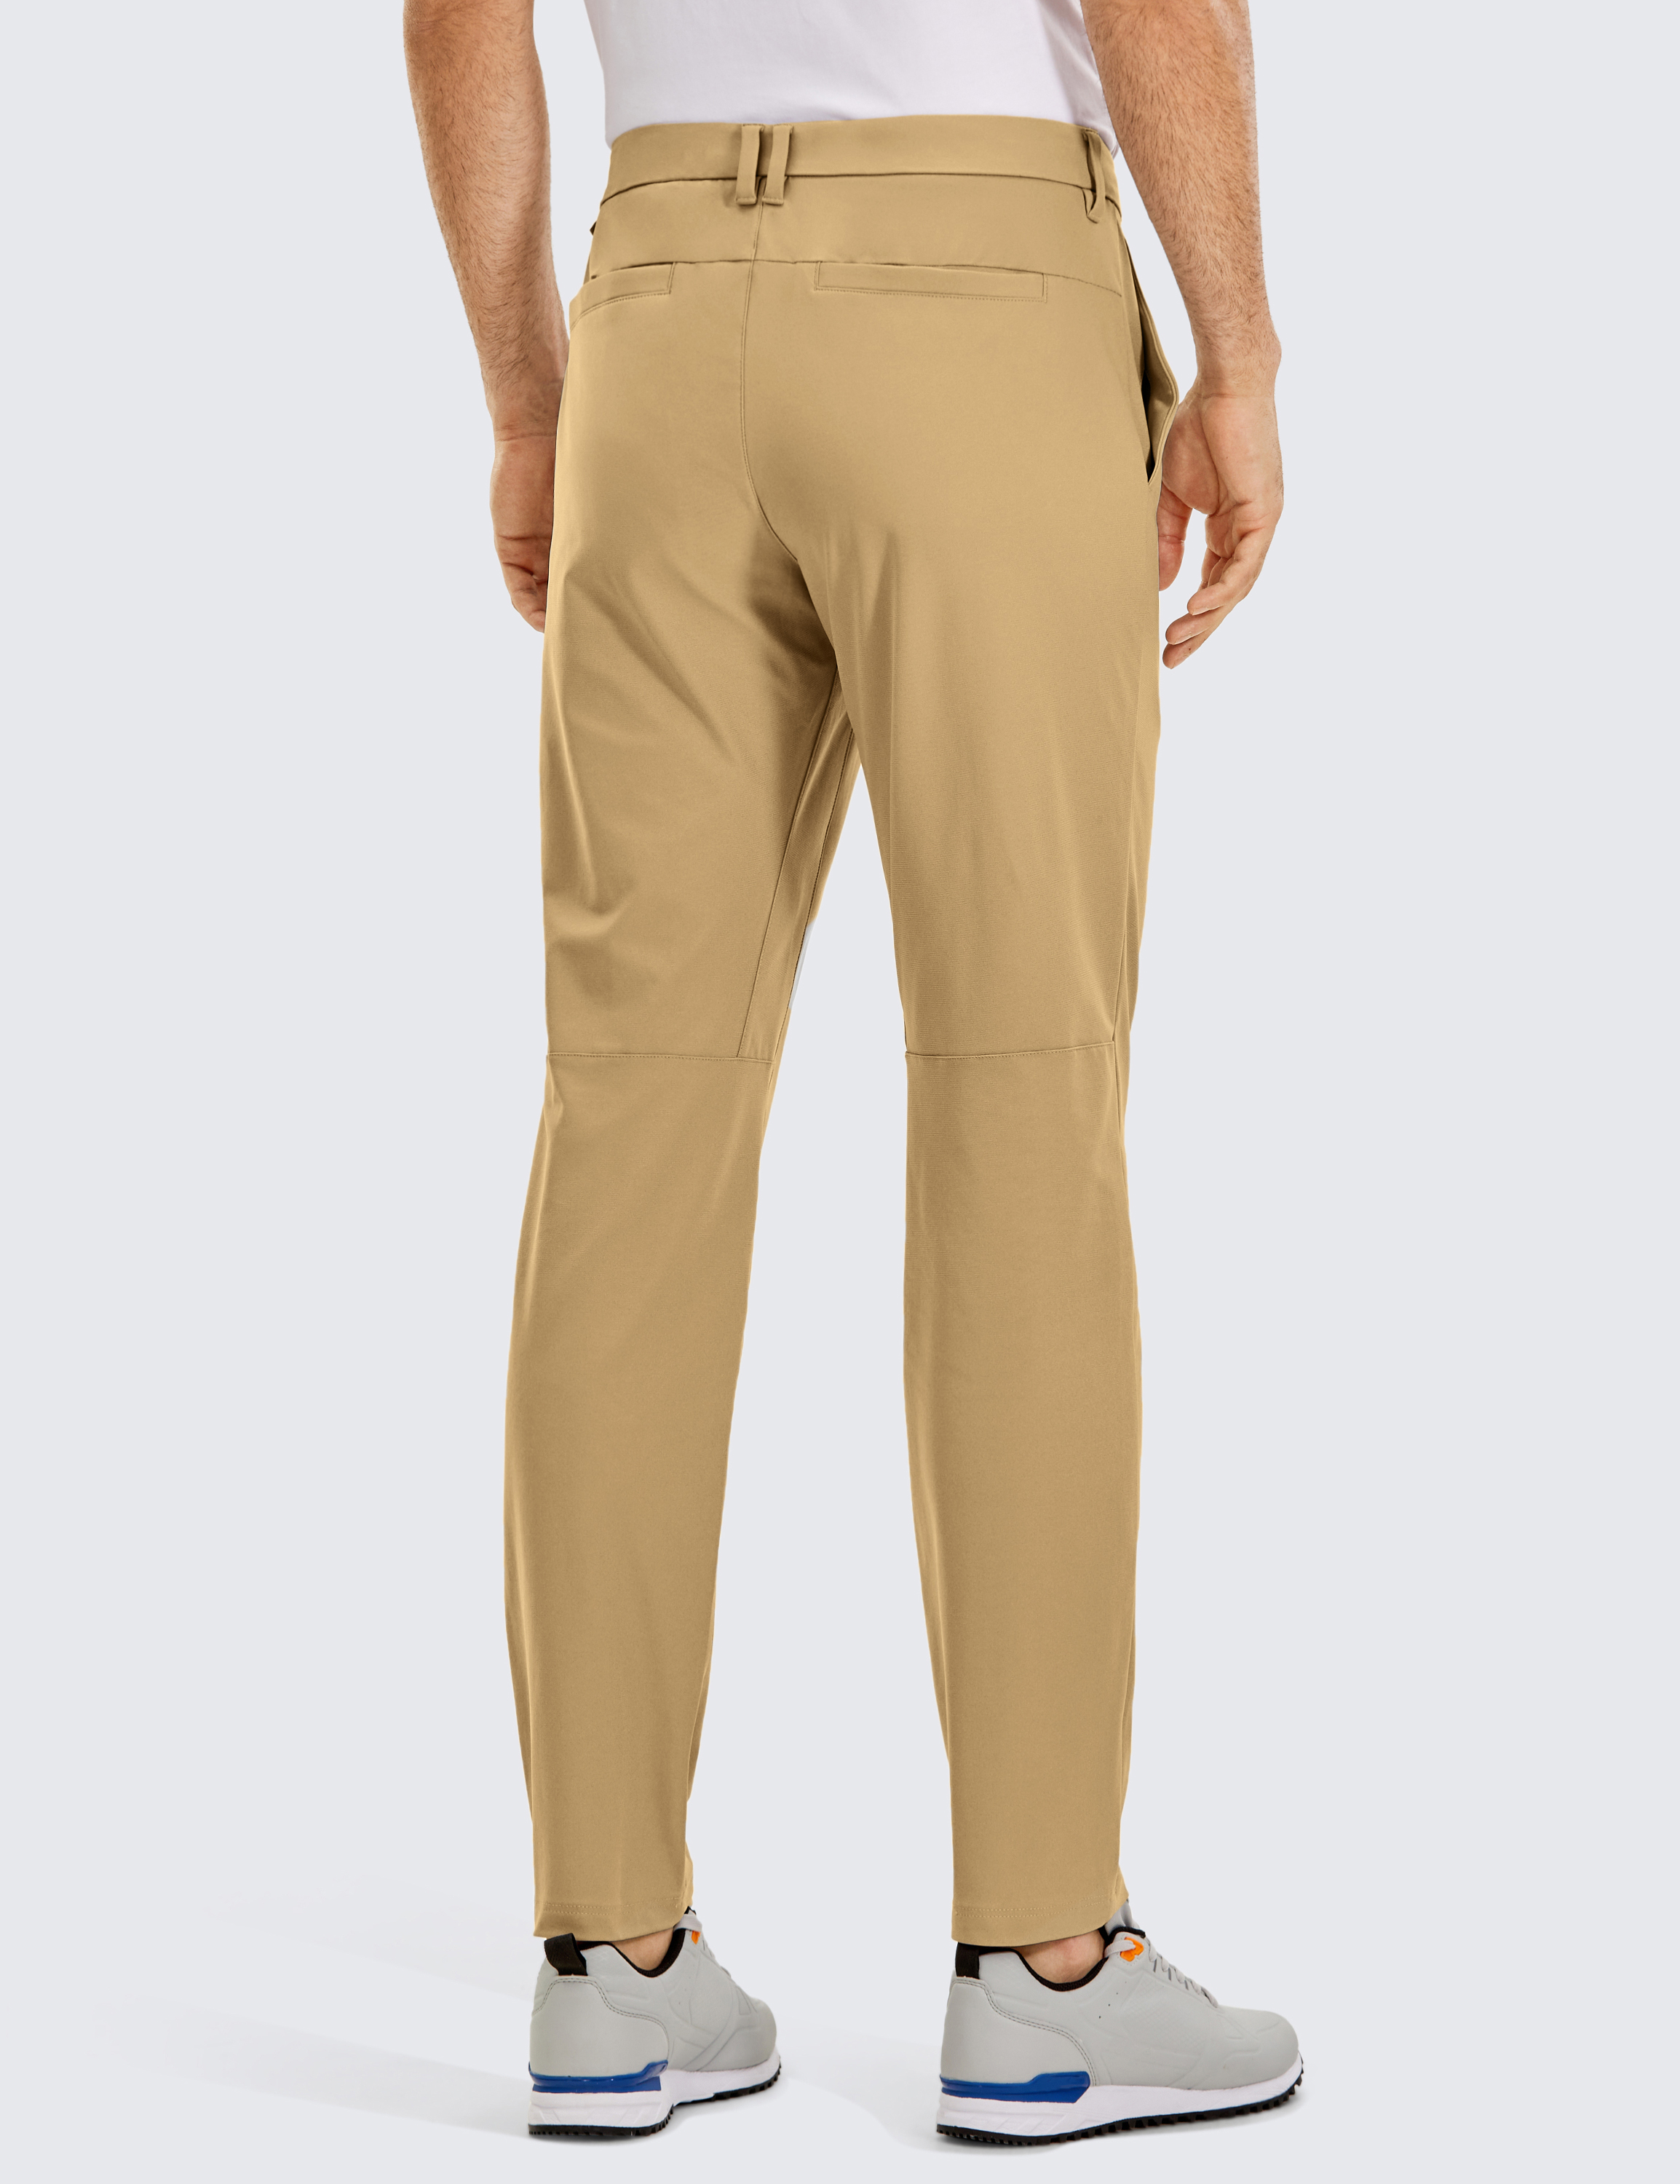 CRZ YOGA, Pants, Allday Comfy Classicfit Golf Pants 32